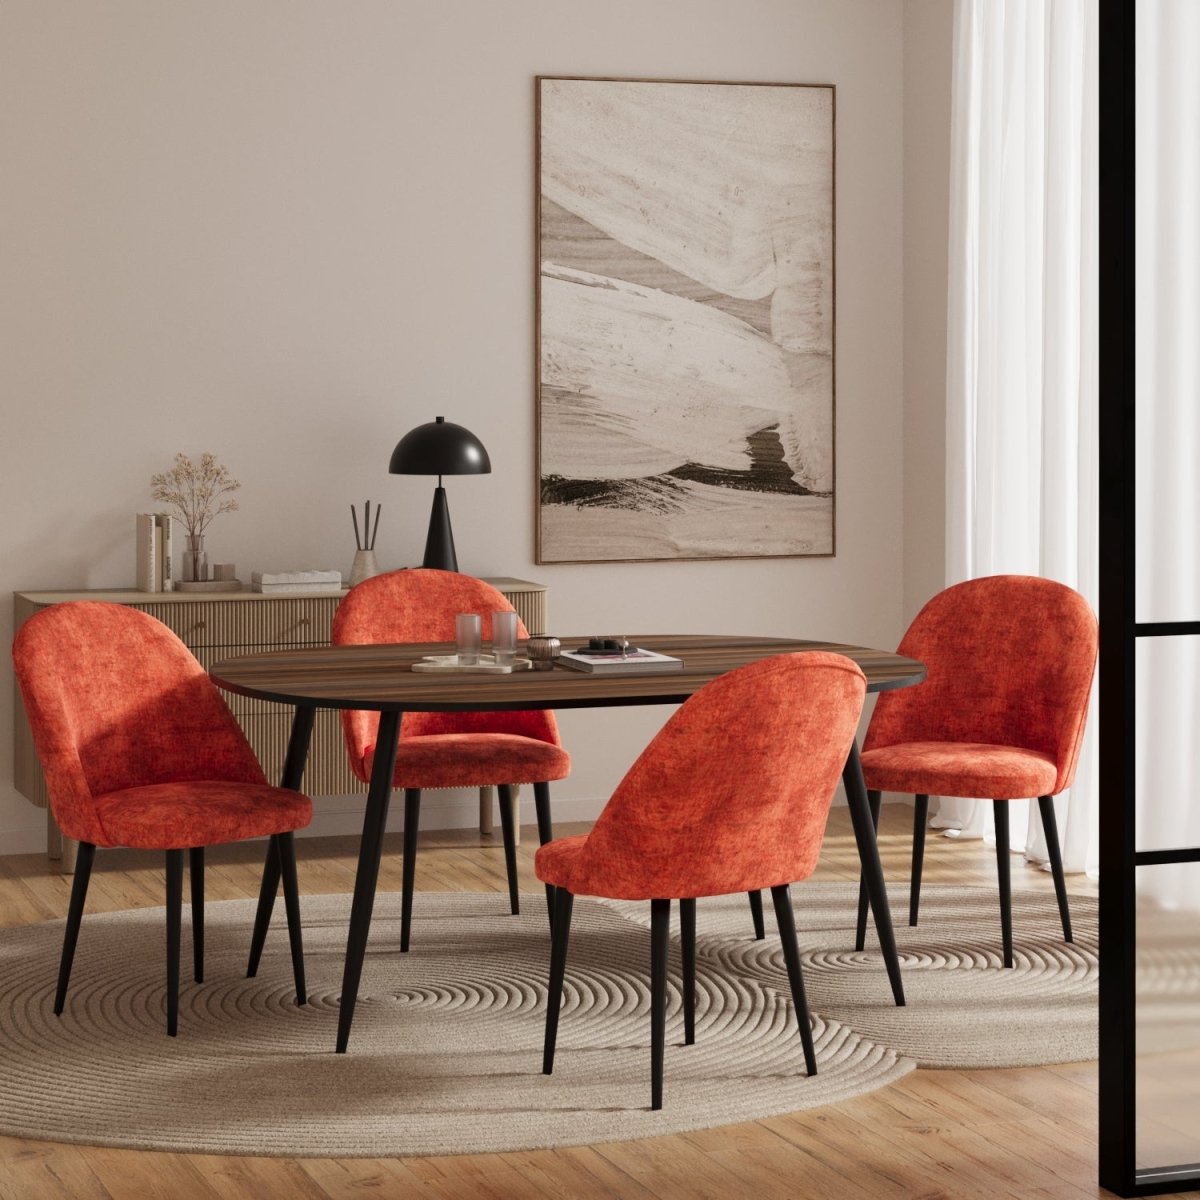 Lot de 2 chaises design scandinave vintage en velours ocre & métal noir - Potiron Paris, Potiron Paris, la déco des intérieurs hauts en couleurs